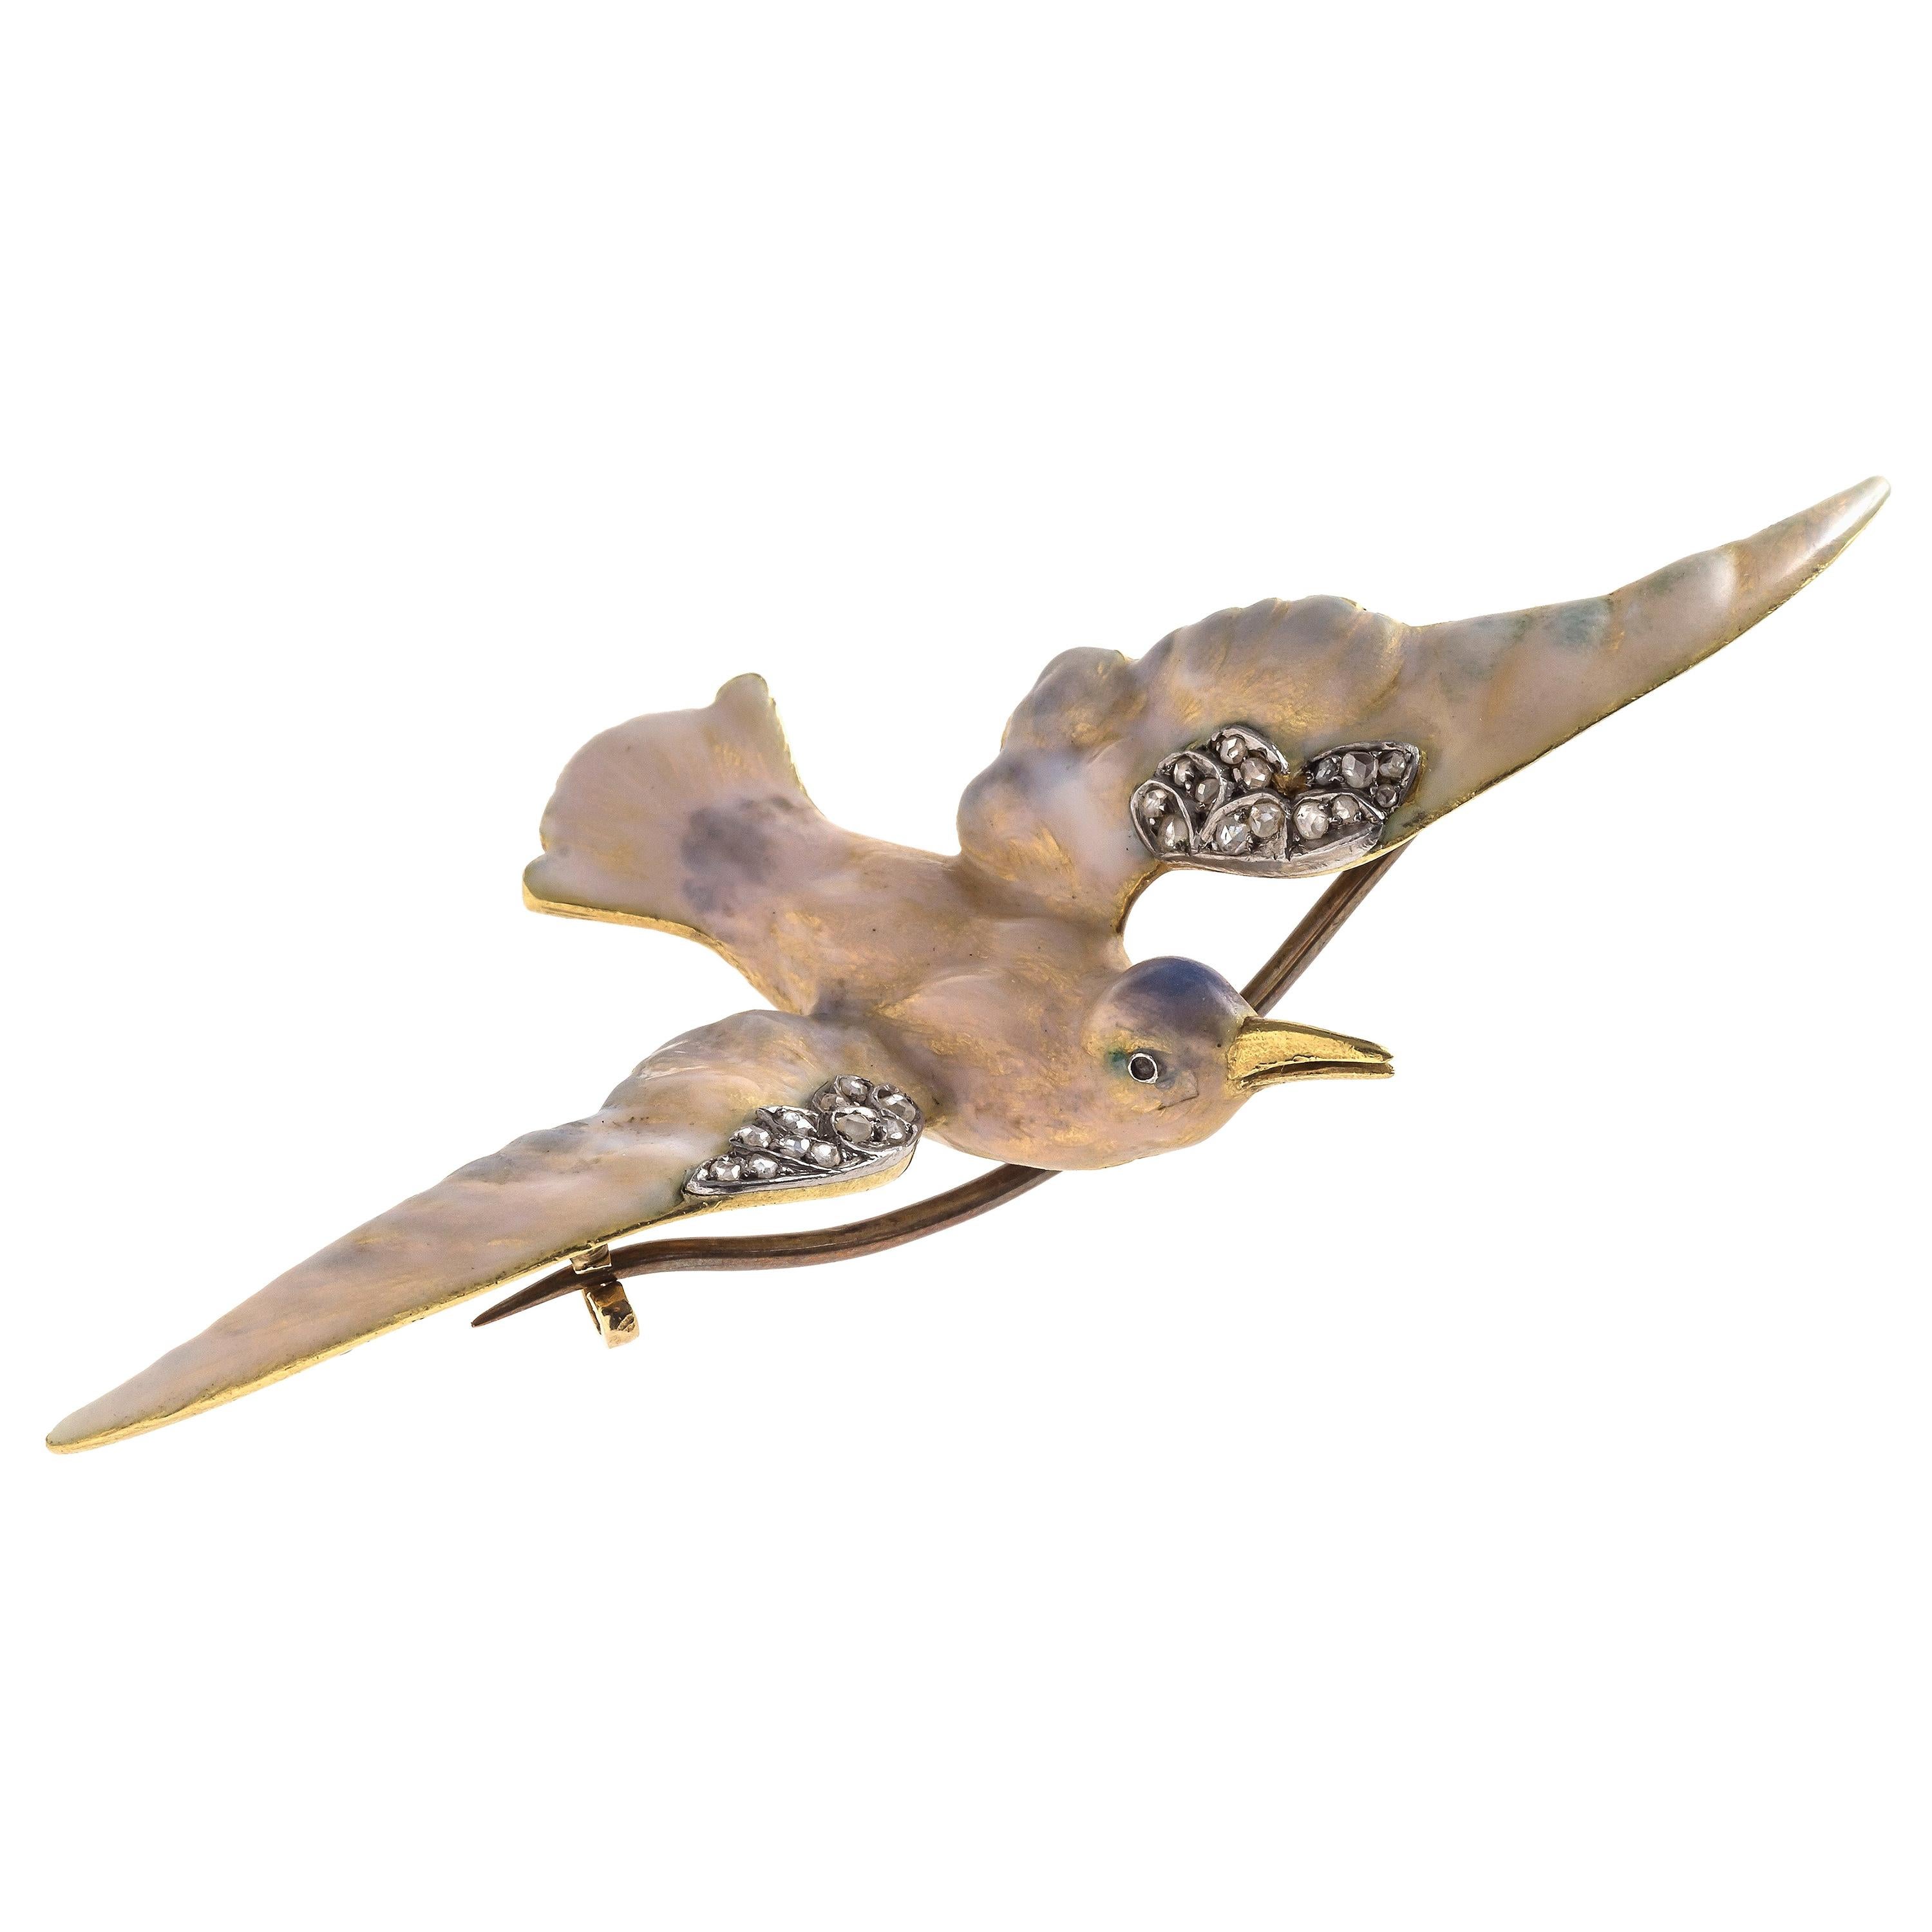 Rarissime broche Art Nouveau représentant une mouette. L'oiseau finement modelé est décoré d'émail guilloché dans des couleurs irisées bleu pâle, vert et rose. L'oiseau est fait de  En or 18 carats, il est gravé de plumes sous l'émail. Même le